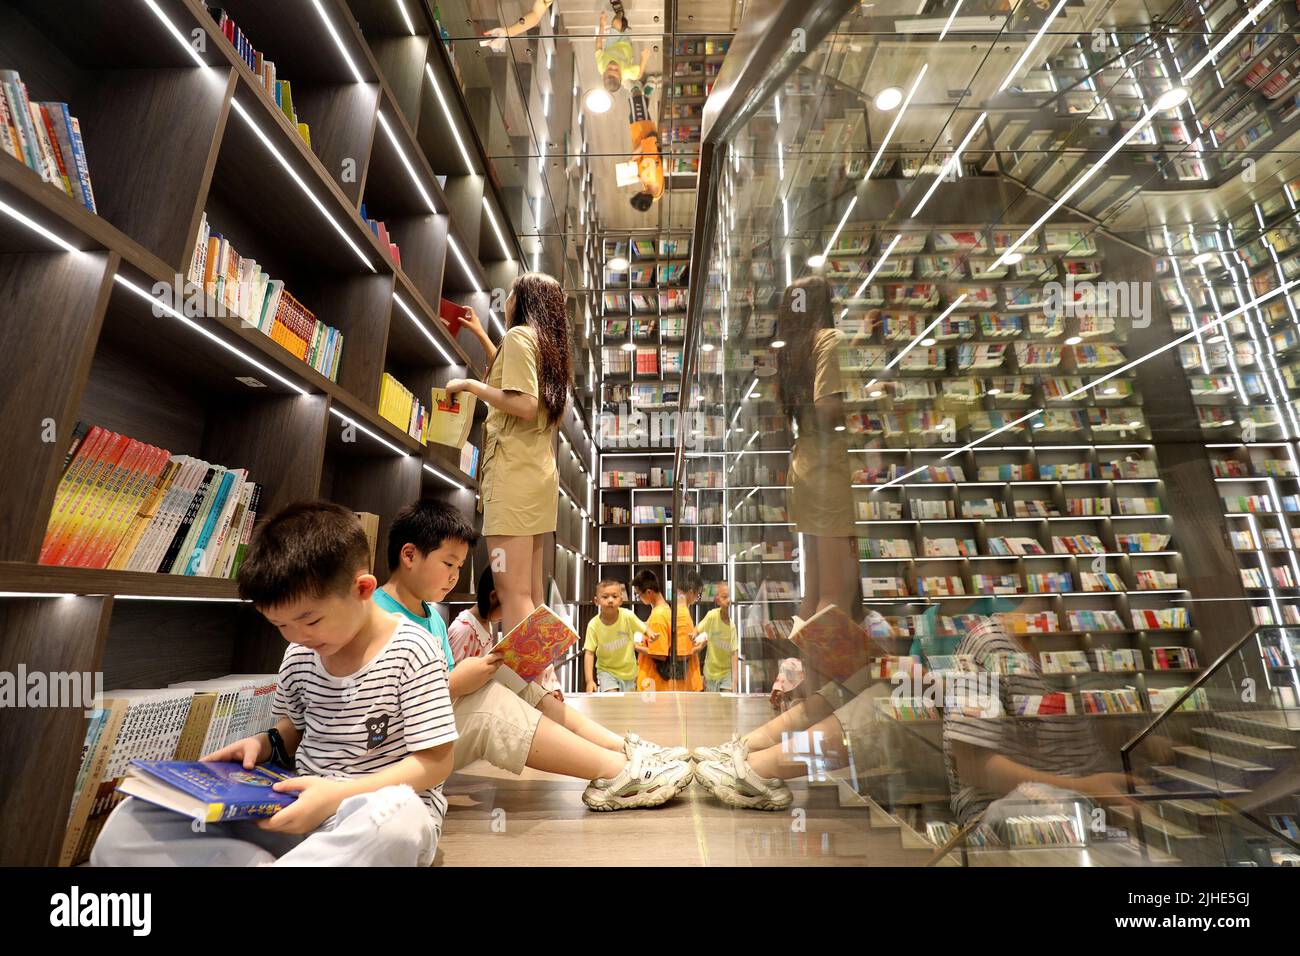 ZIXING, CINA - 18 LUGLIO 2022 - gli studenti leggono libri alla Boya Bookstore di Tangdong Street, Zixing, nella provincia di Hunan della Cina centrale, il 18 luglio 2022. Foto Stock